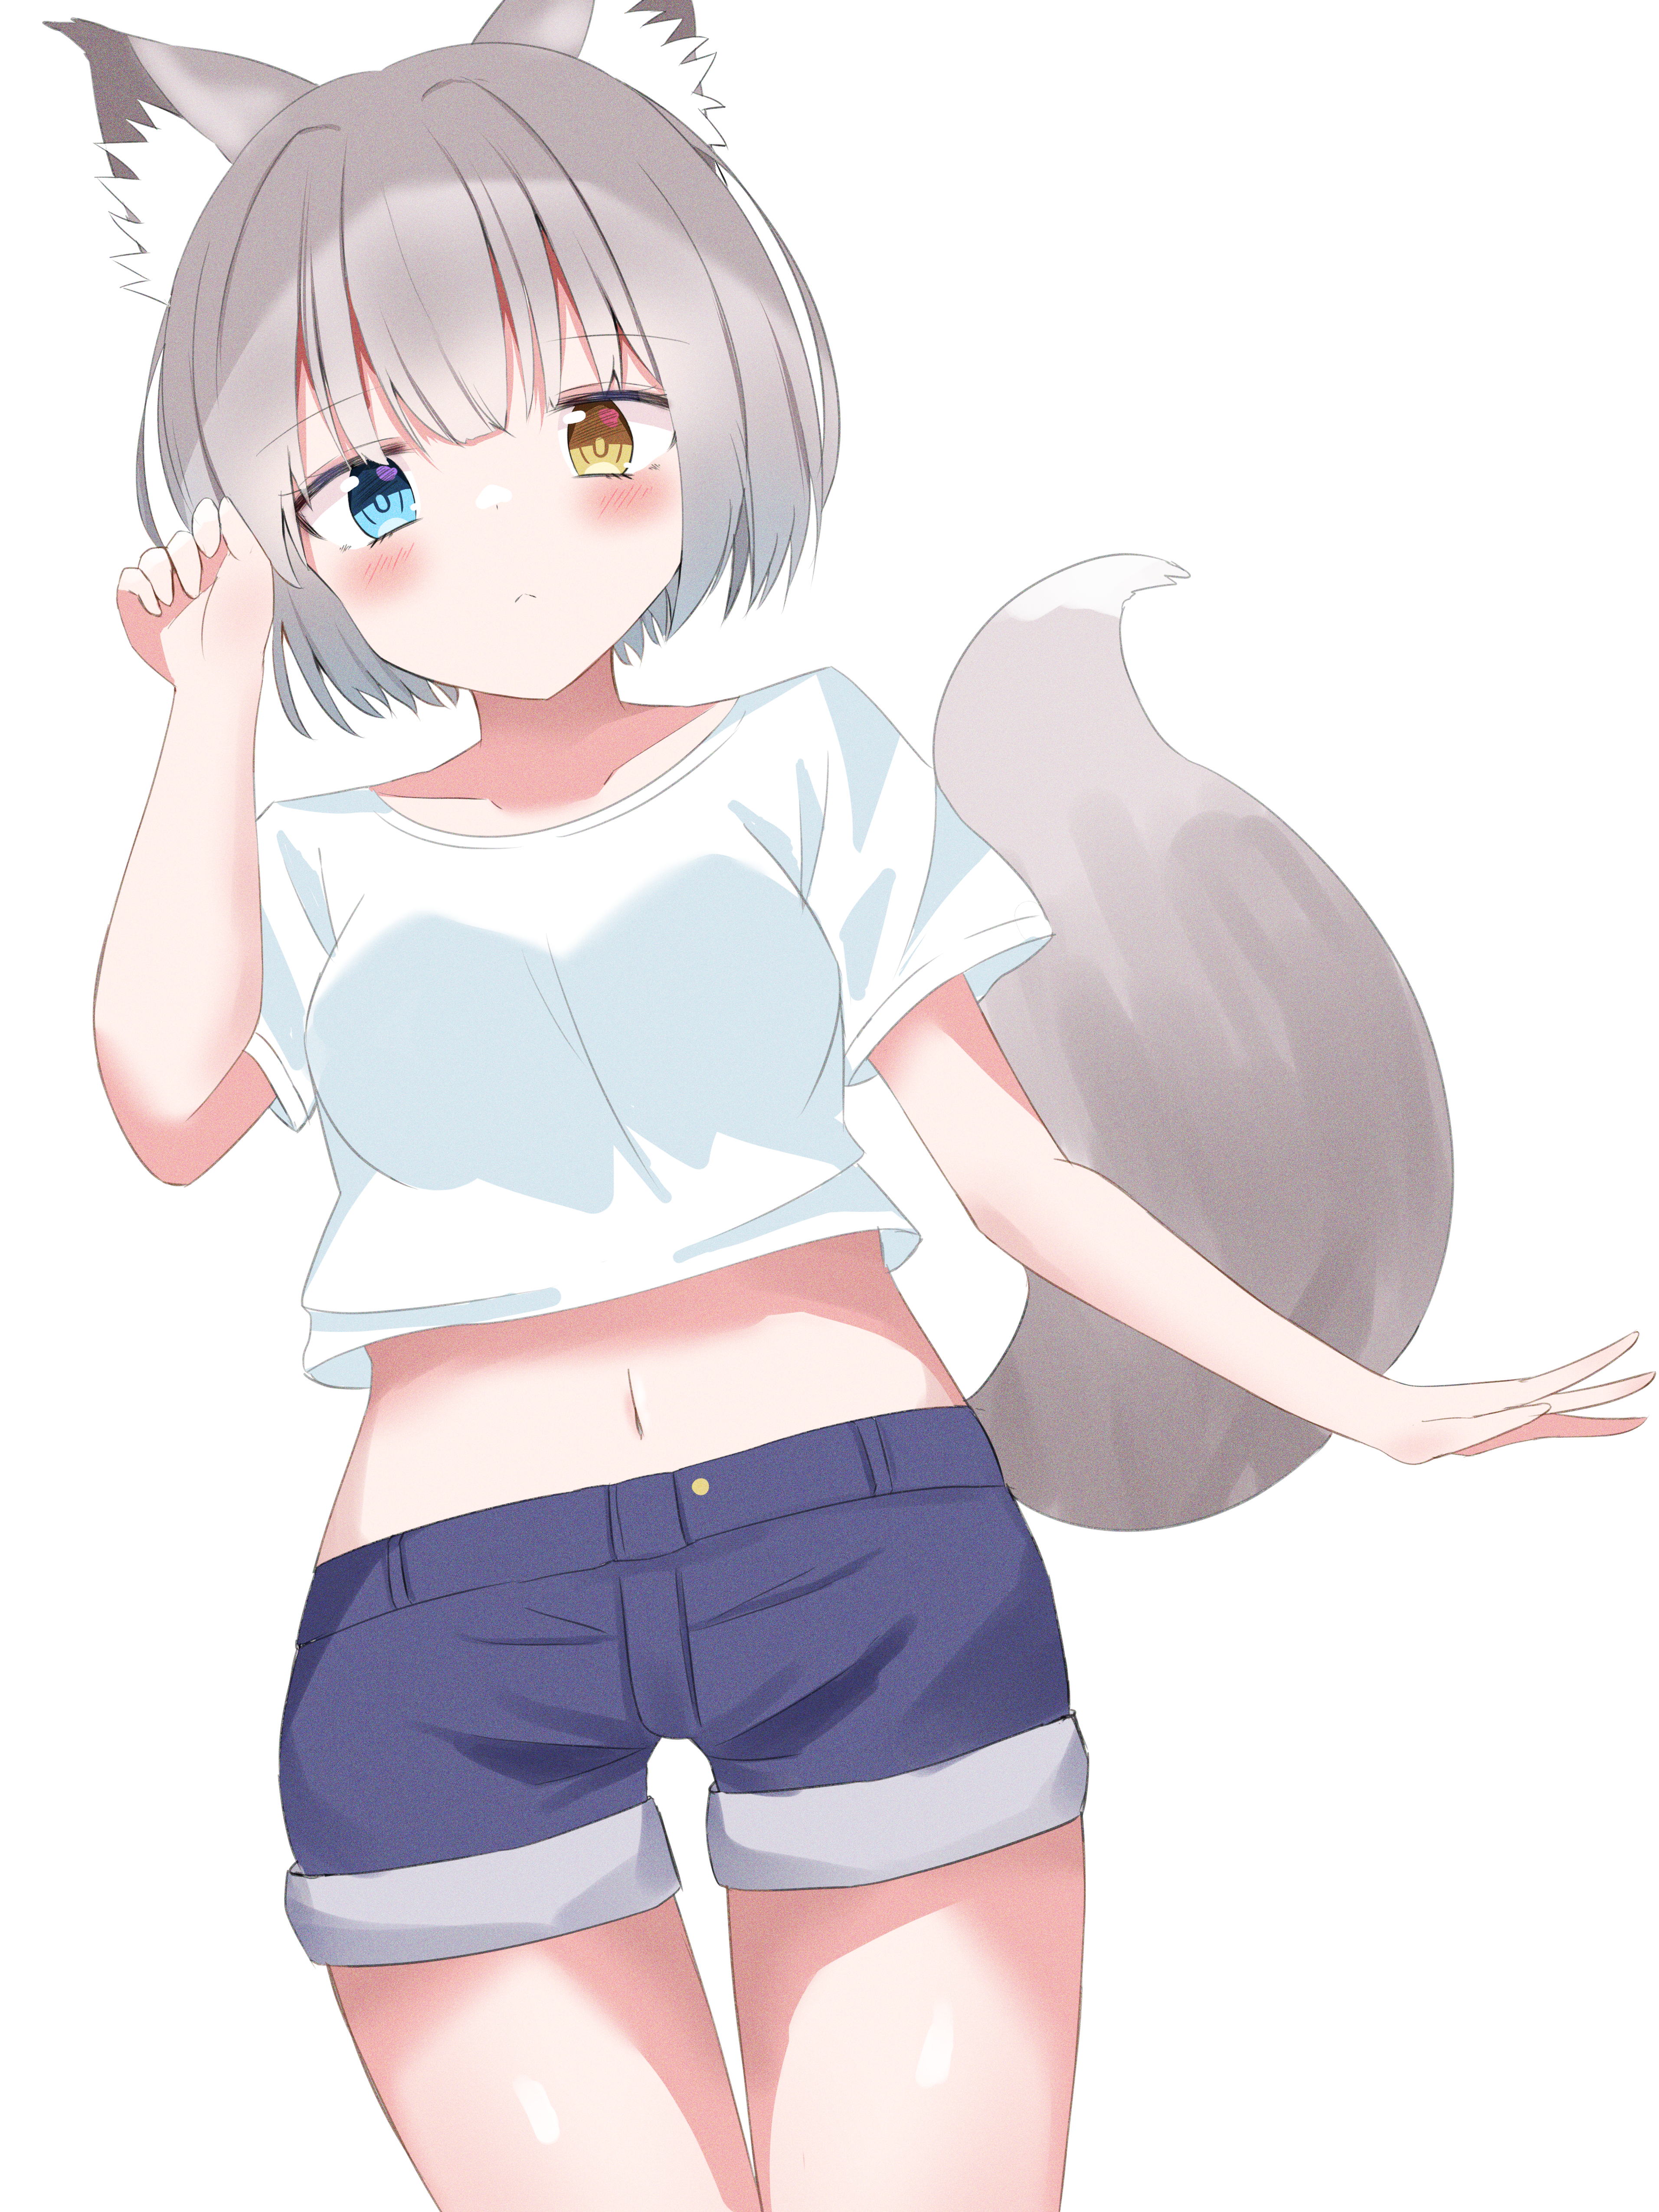 Anime 3825x5100 animal ears fox girl simple background heterochromia anime girls fox ears fox tail belly button